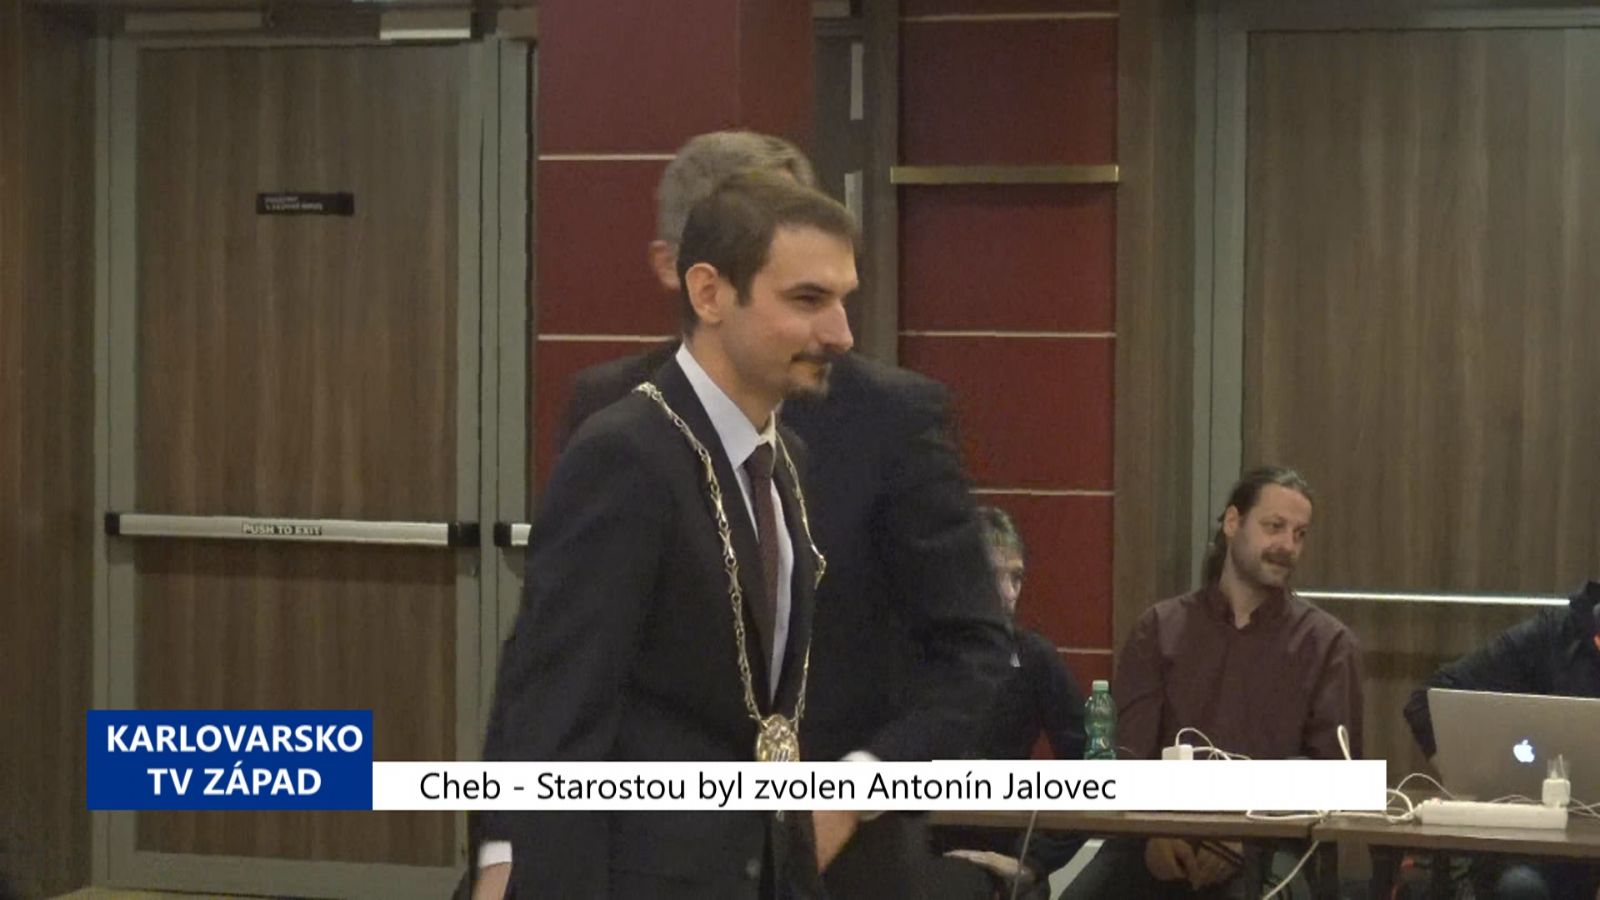 Cheb: Starostou byl zvolen Antonín Jalovec (TV Západ)